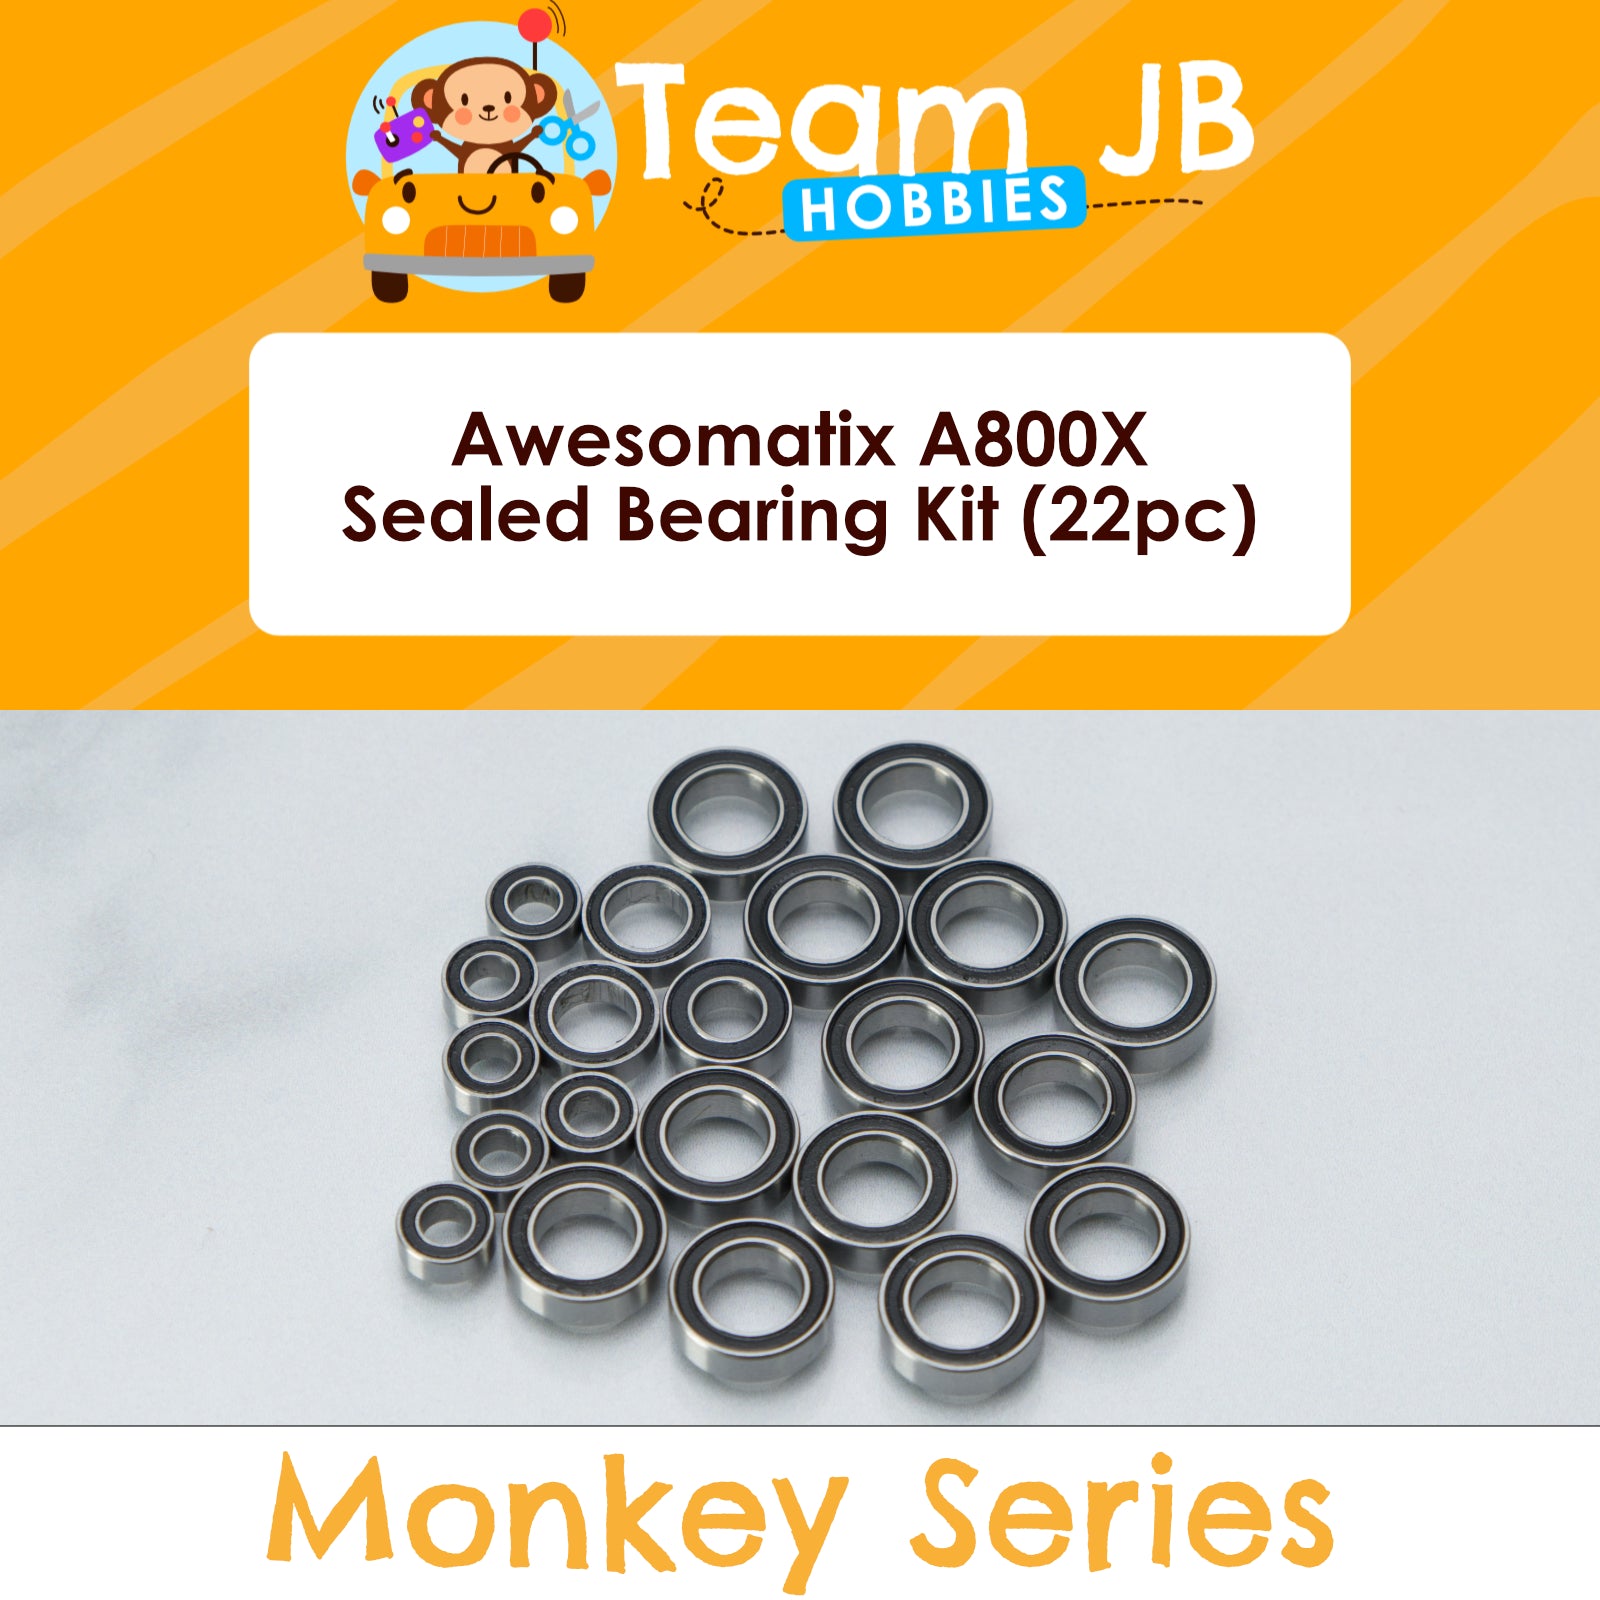 Awesomatix A800X - Sealed Bearing Kit